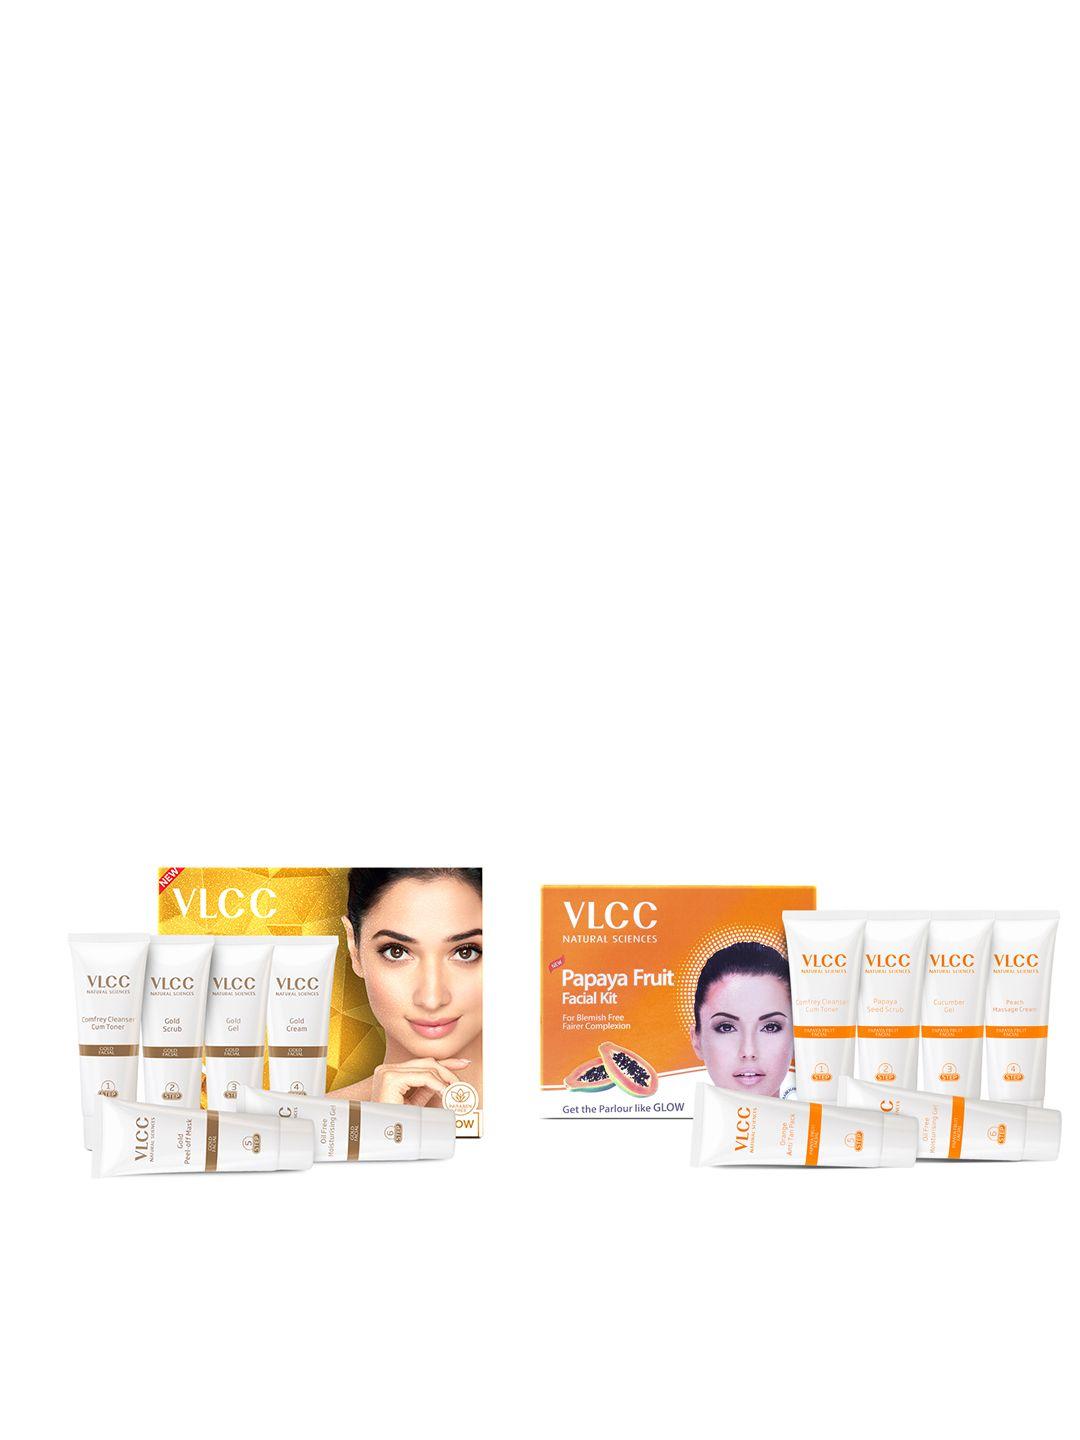 vlcc-gold-facial-kit-for-luminous-complexion-60g-&-papaya-fruit-facial-kit-60g